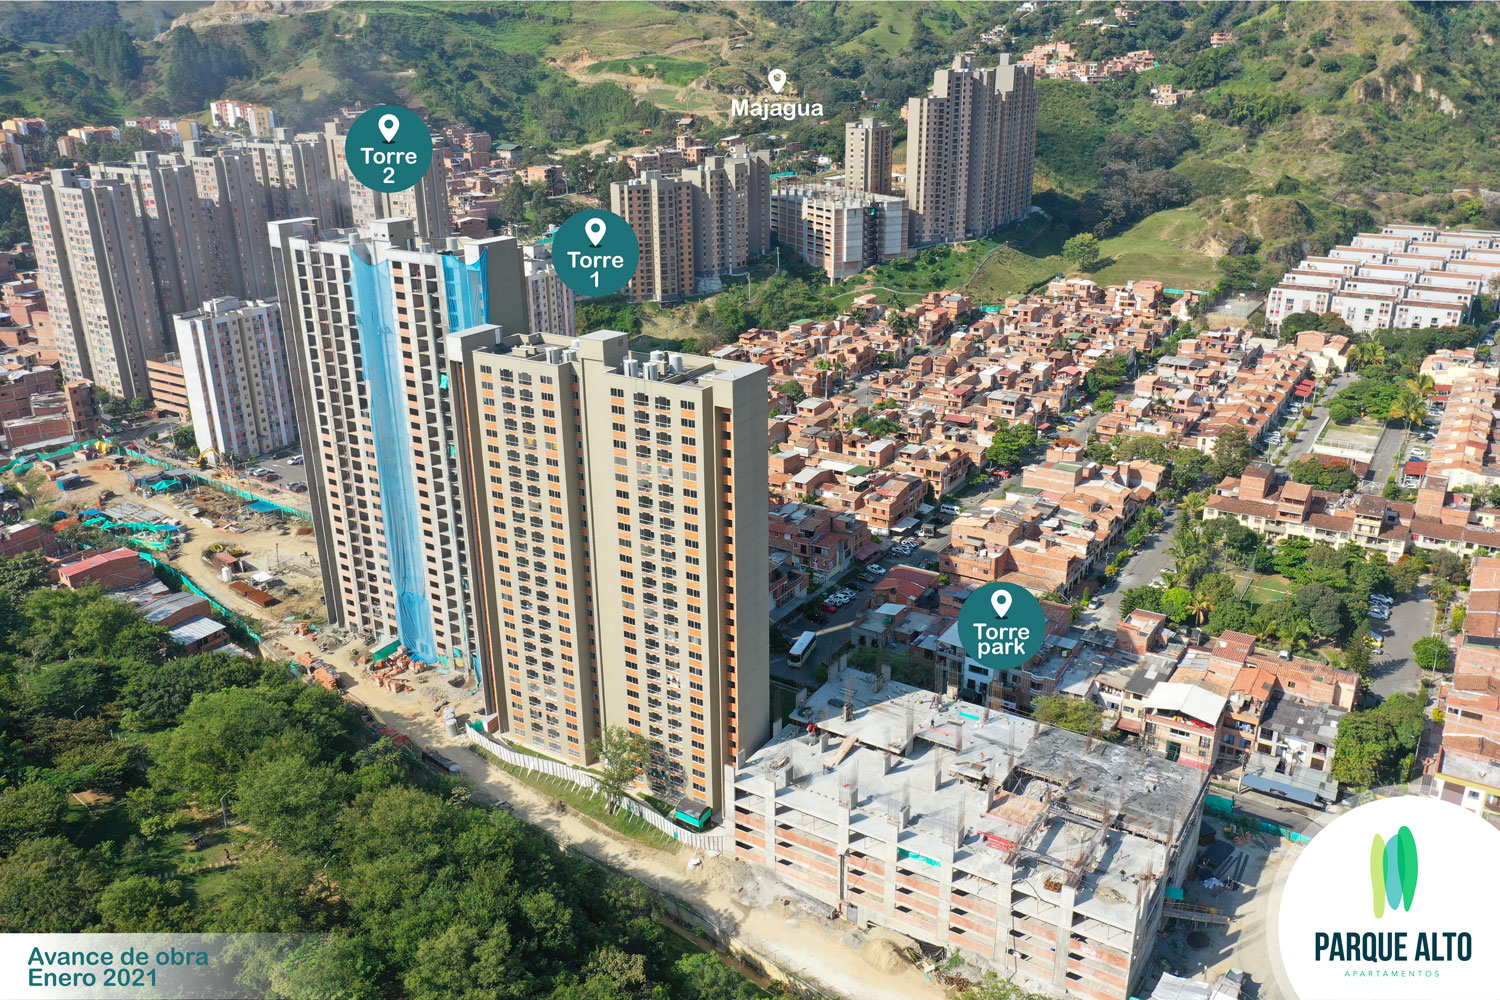 Avance de obra Parque Alto - Parque Alto, Viviendas, Apartamentos o Casas de Interés Social en Bello